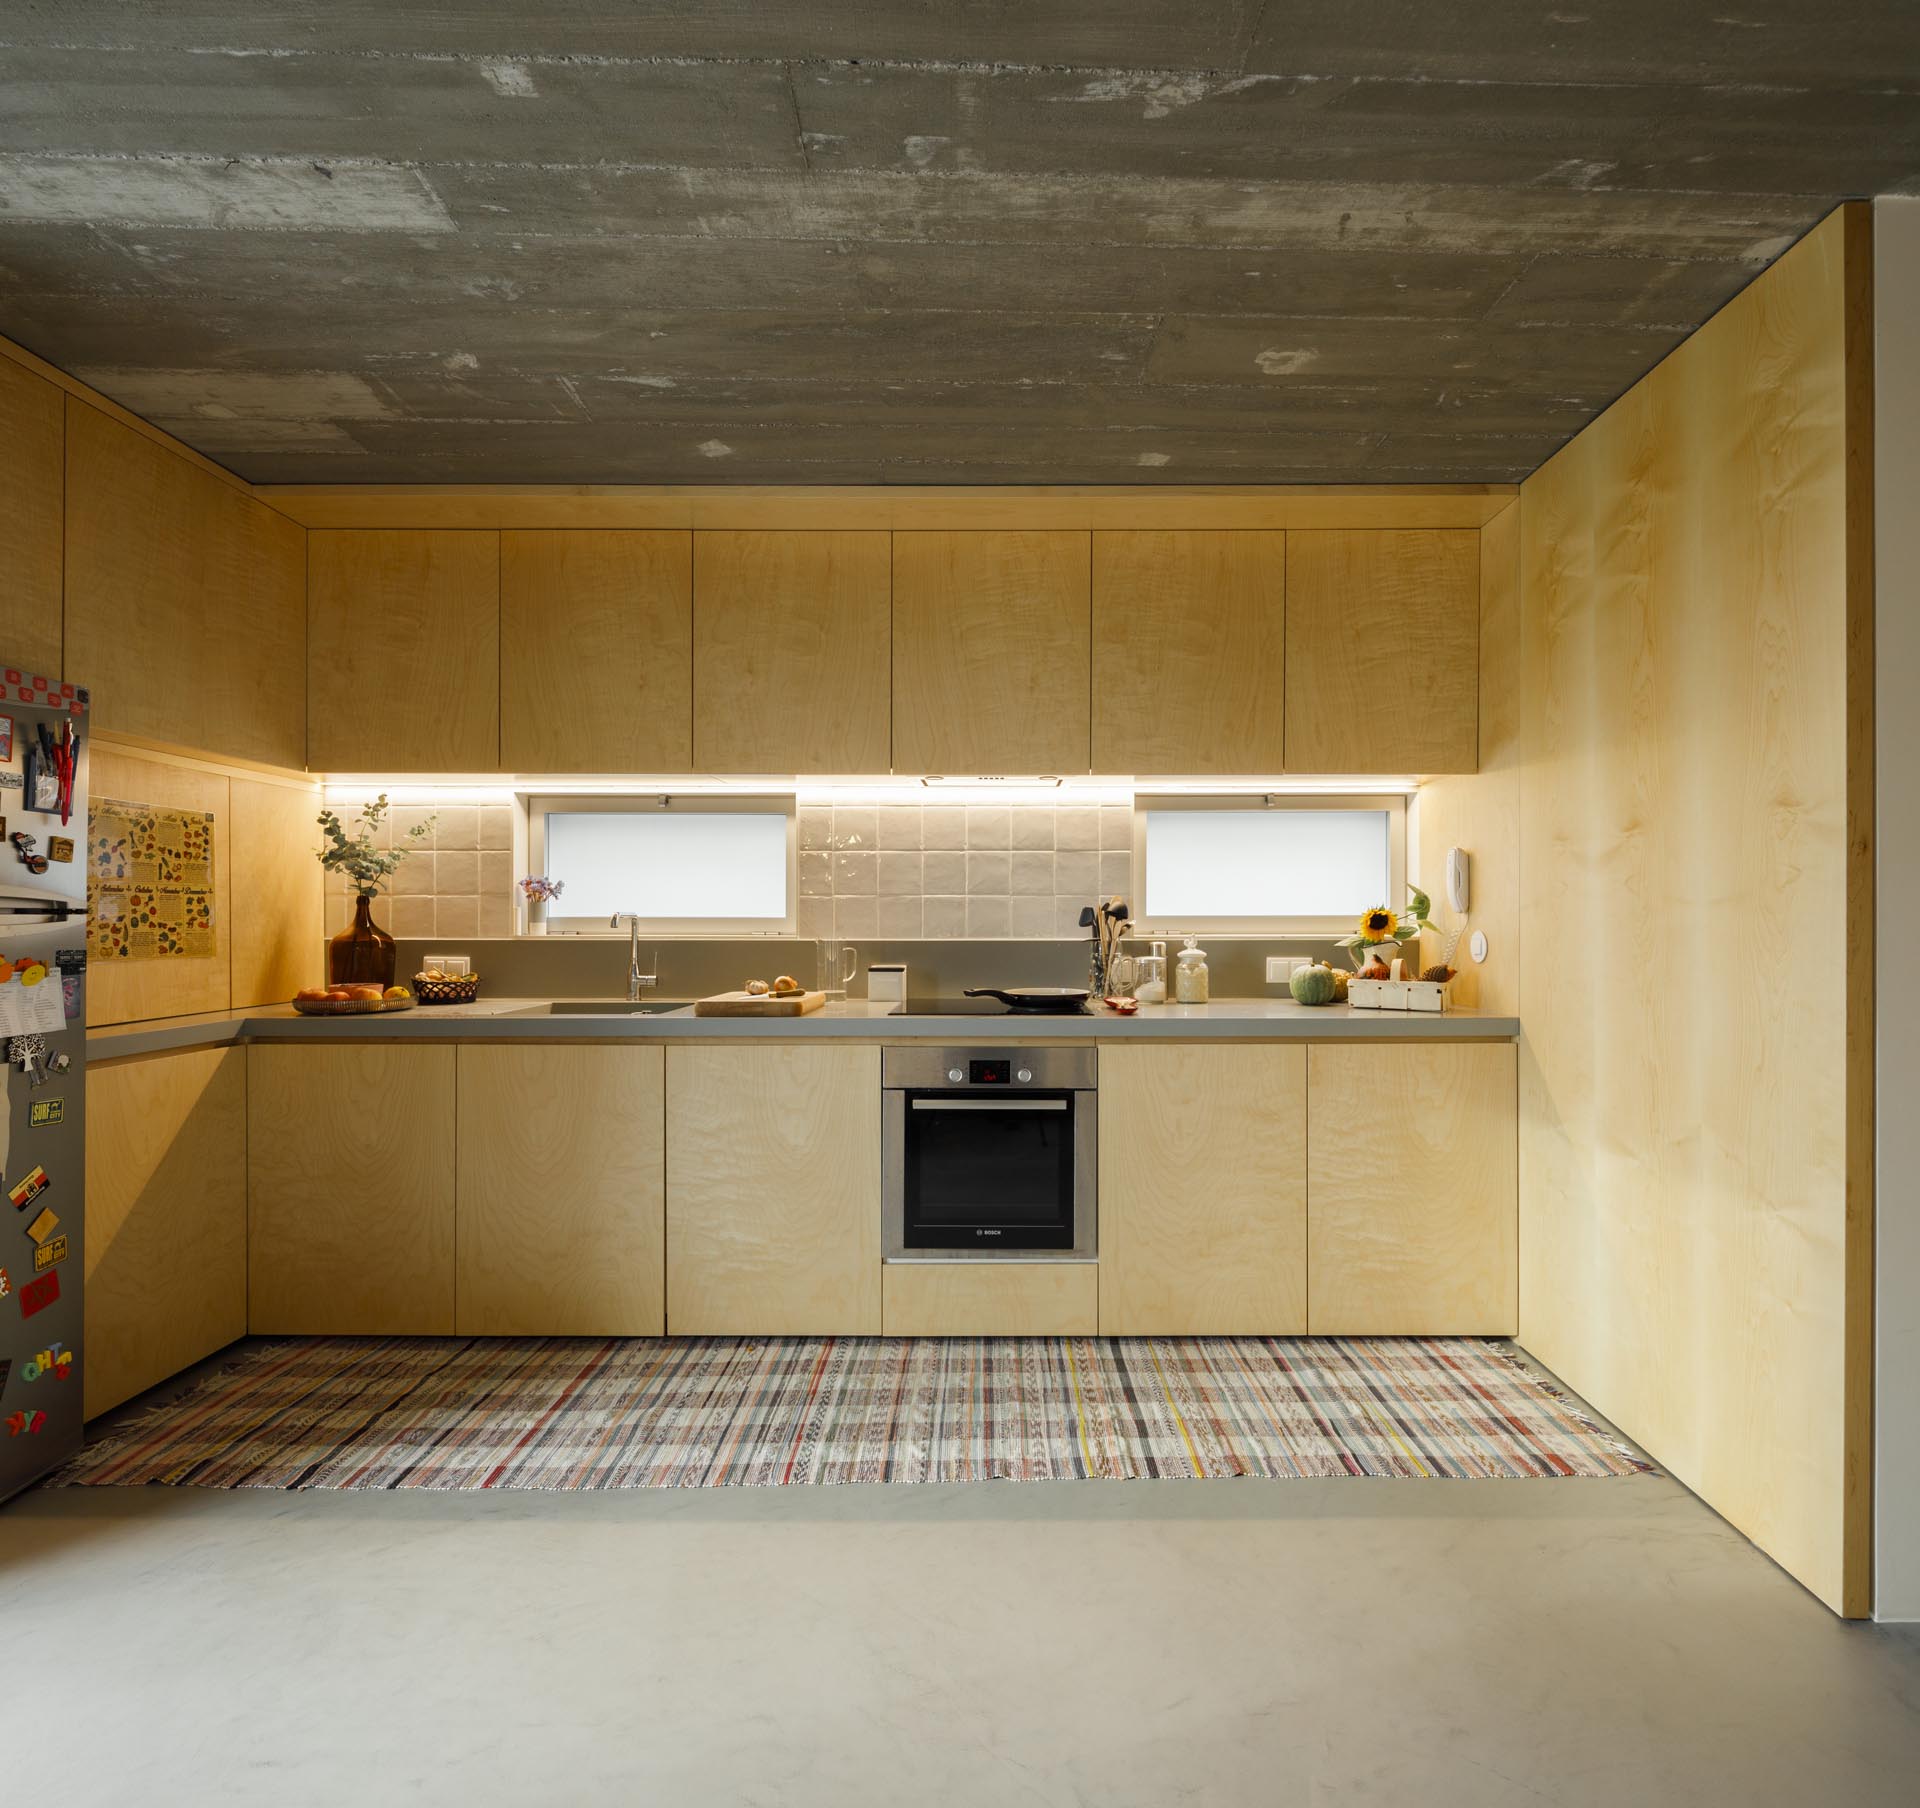 Современная деревянная кухня со шкафами без оборудования.